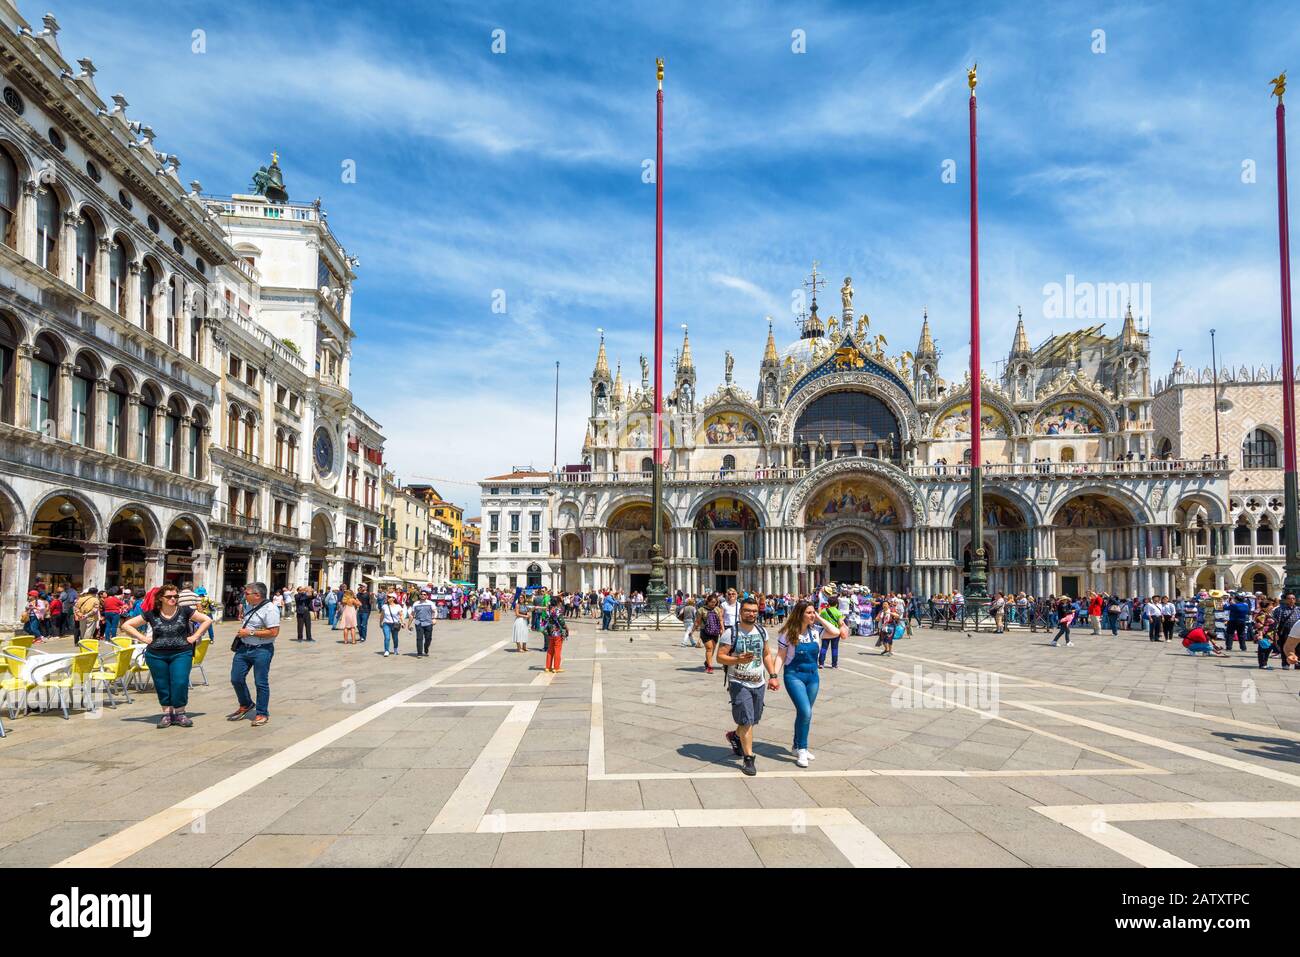 Venedig, Italien - 19. Mai 2017: Touristen gehen auf der Piazza San Marco (St. Mark's Square). Dies ist der Hauptplatz von Venedig. Stockfoto